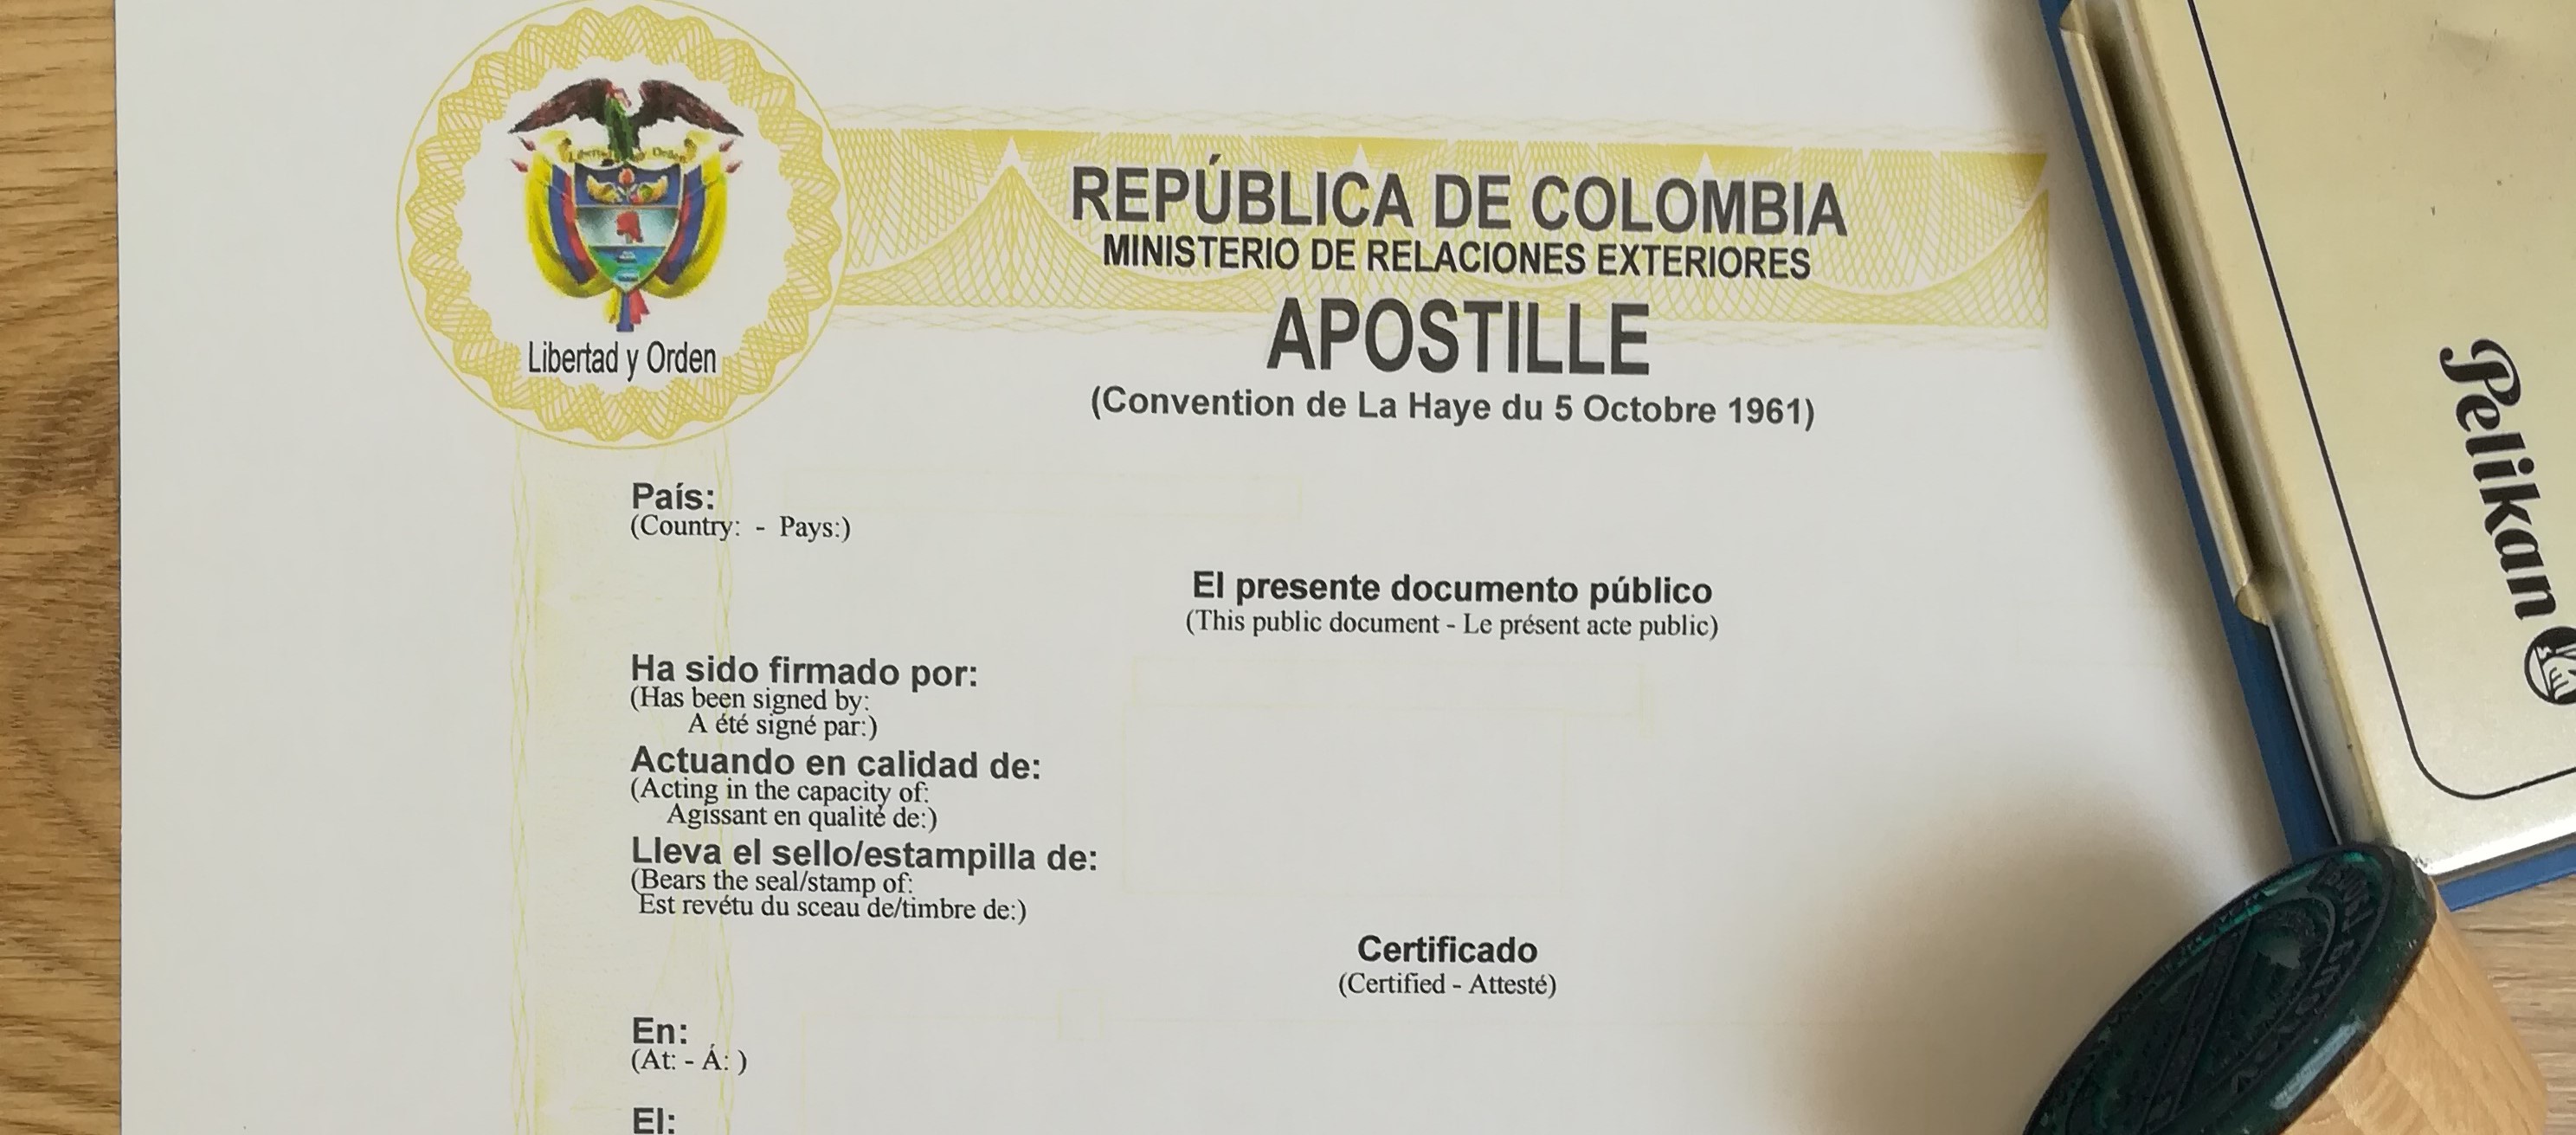 Che cosa è una apostille? Esempio di una apostille di Colombia.